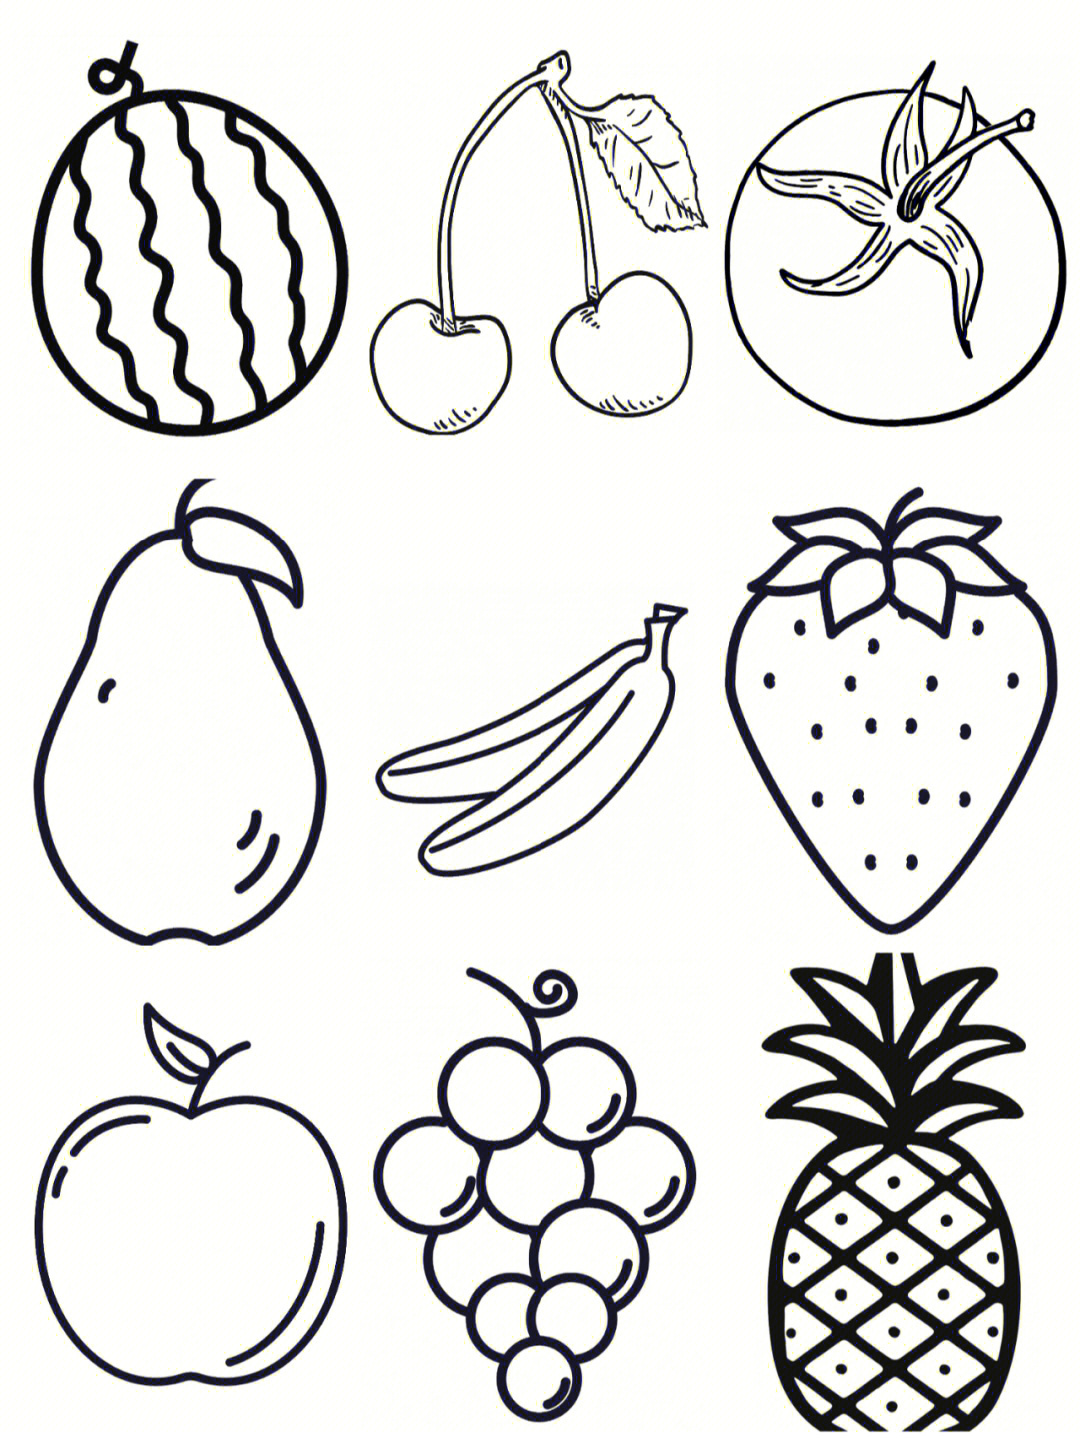 用1~3种水果做水果拼盘,亲子手工水果拼盘图片,西瓜最简单的拼盘造型(第10页)_大山谷图库